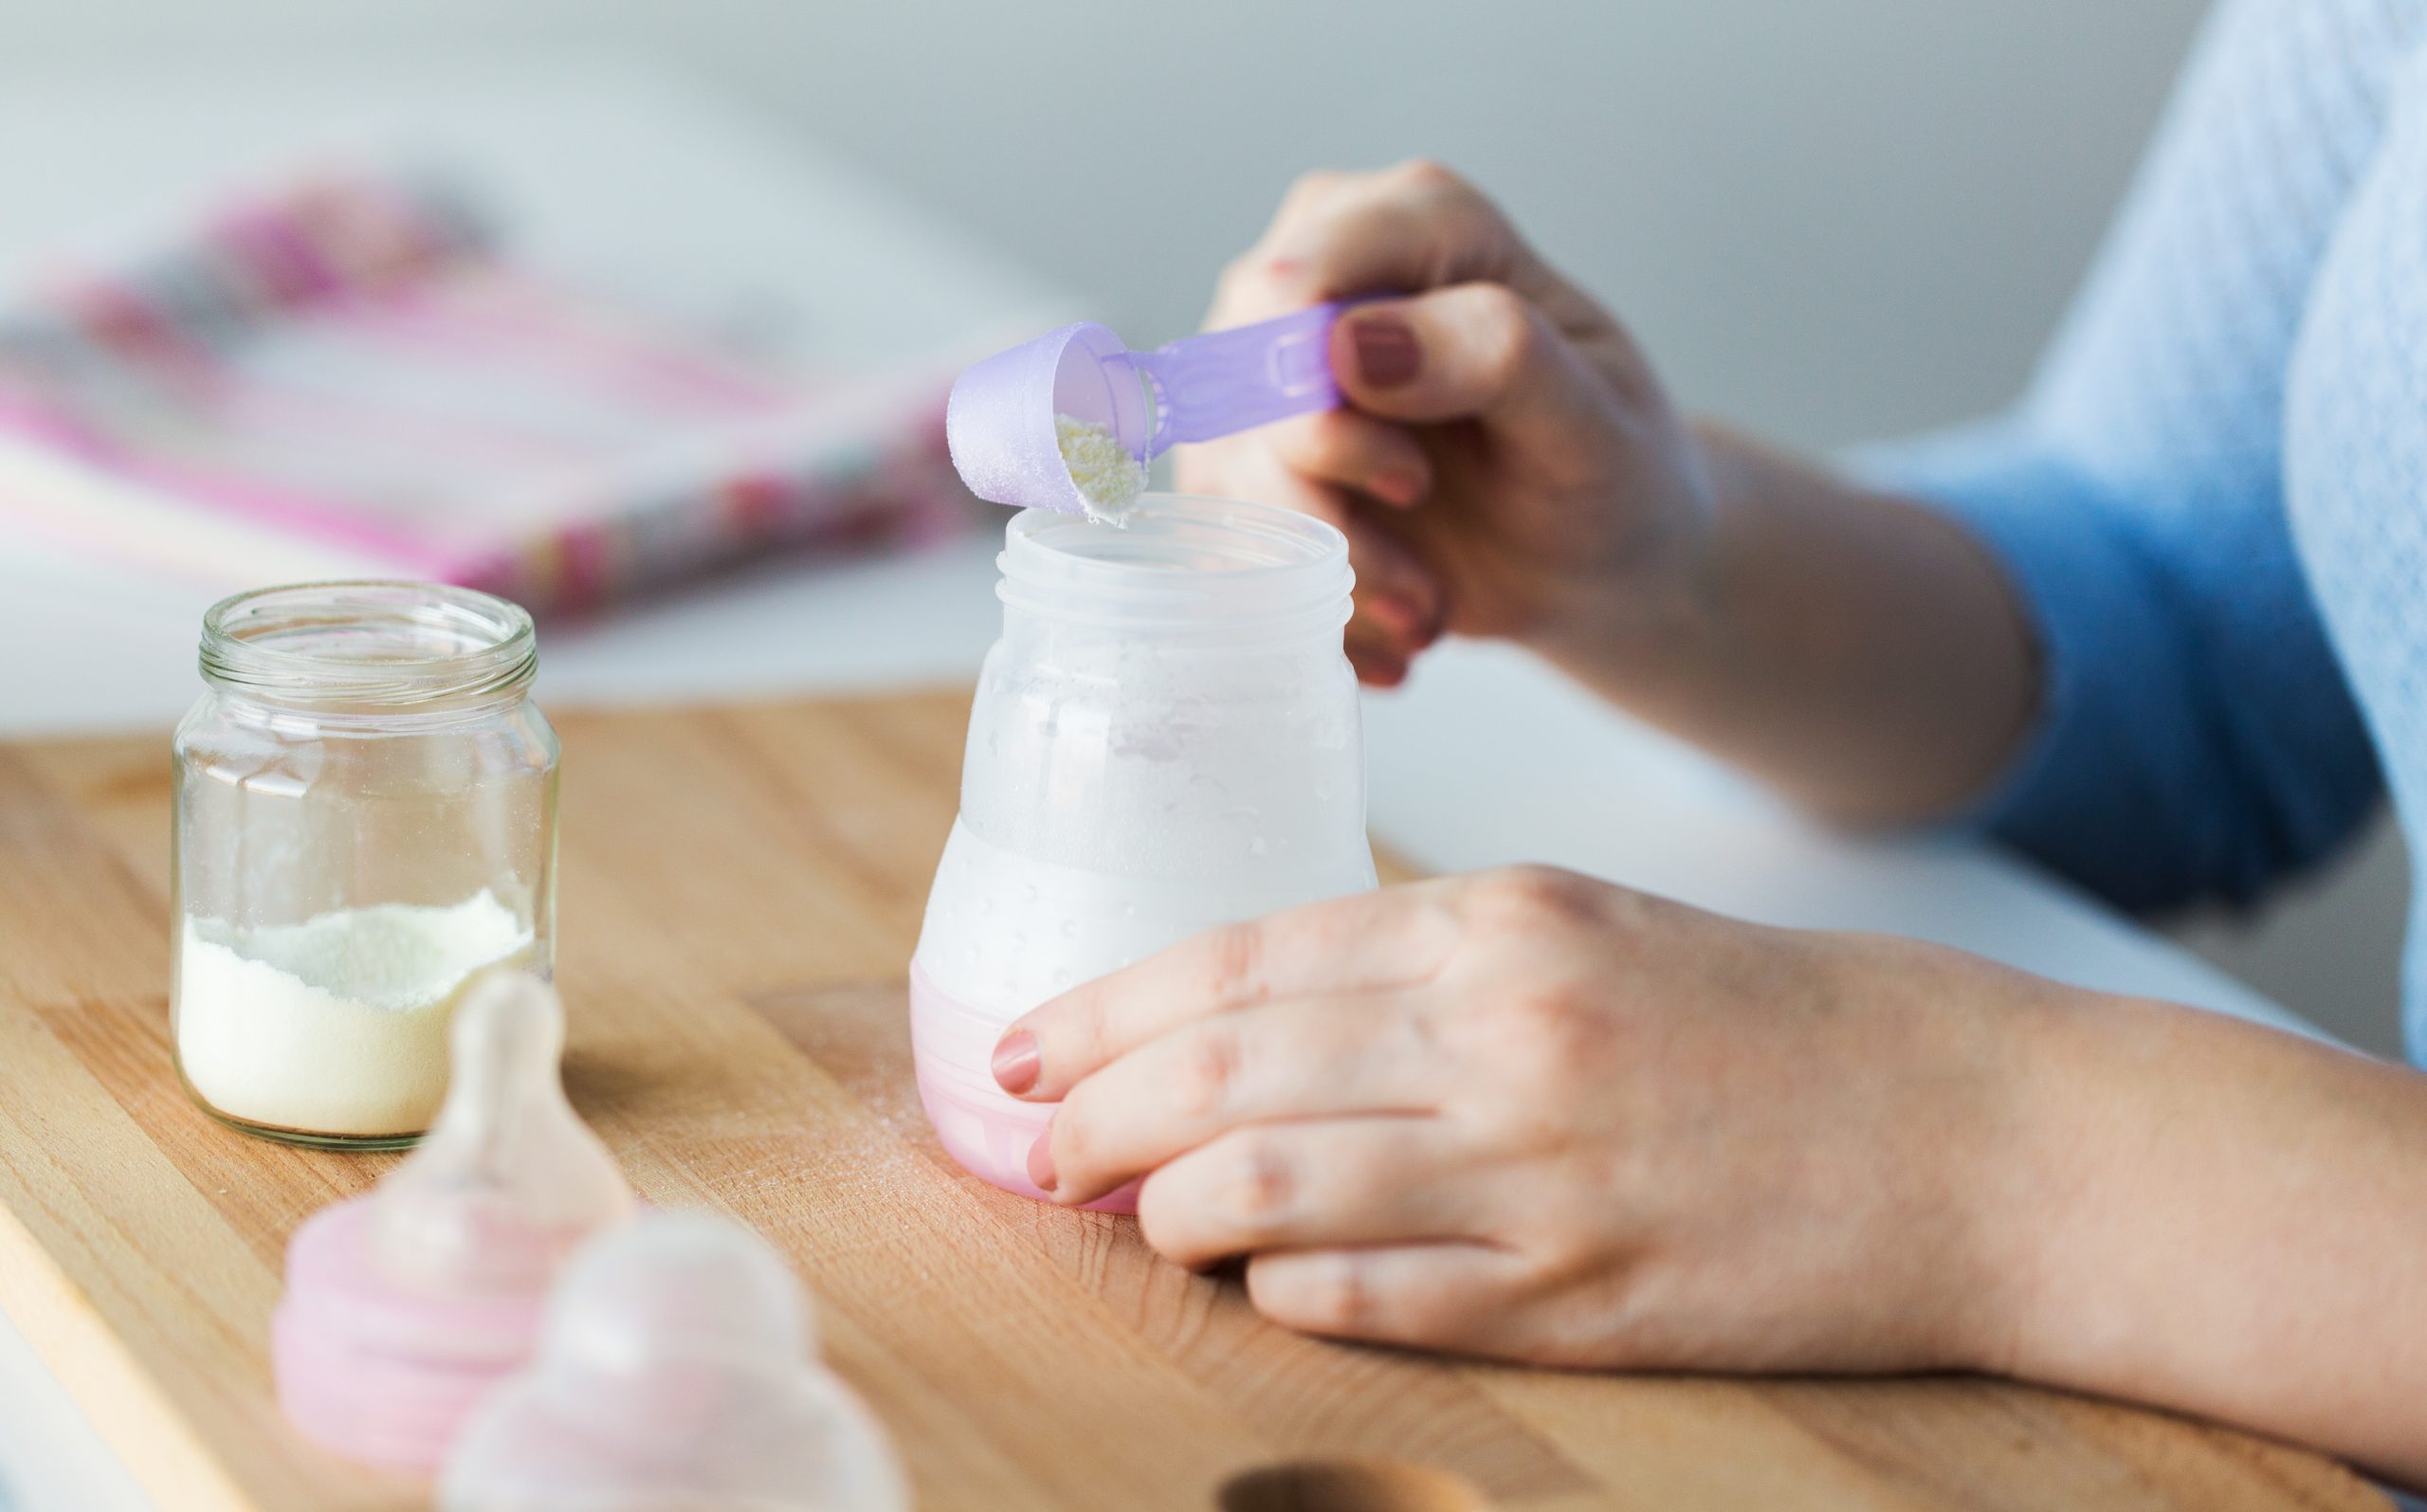 Biberons pour lait maternel 15Oml - Fil Médical